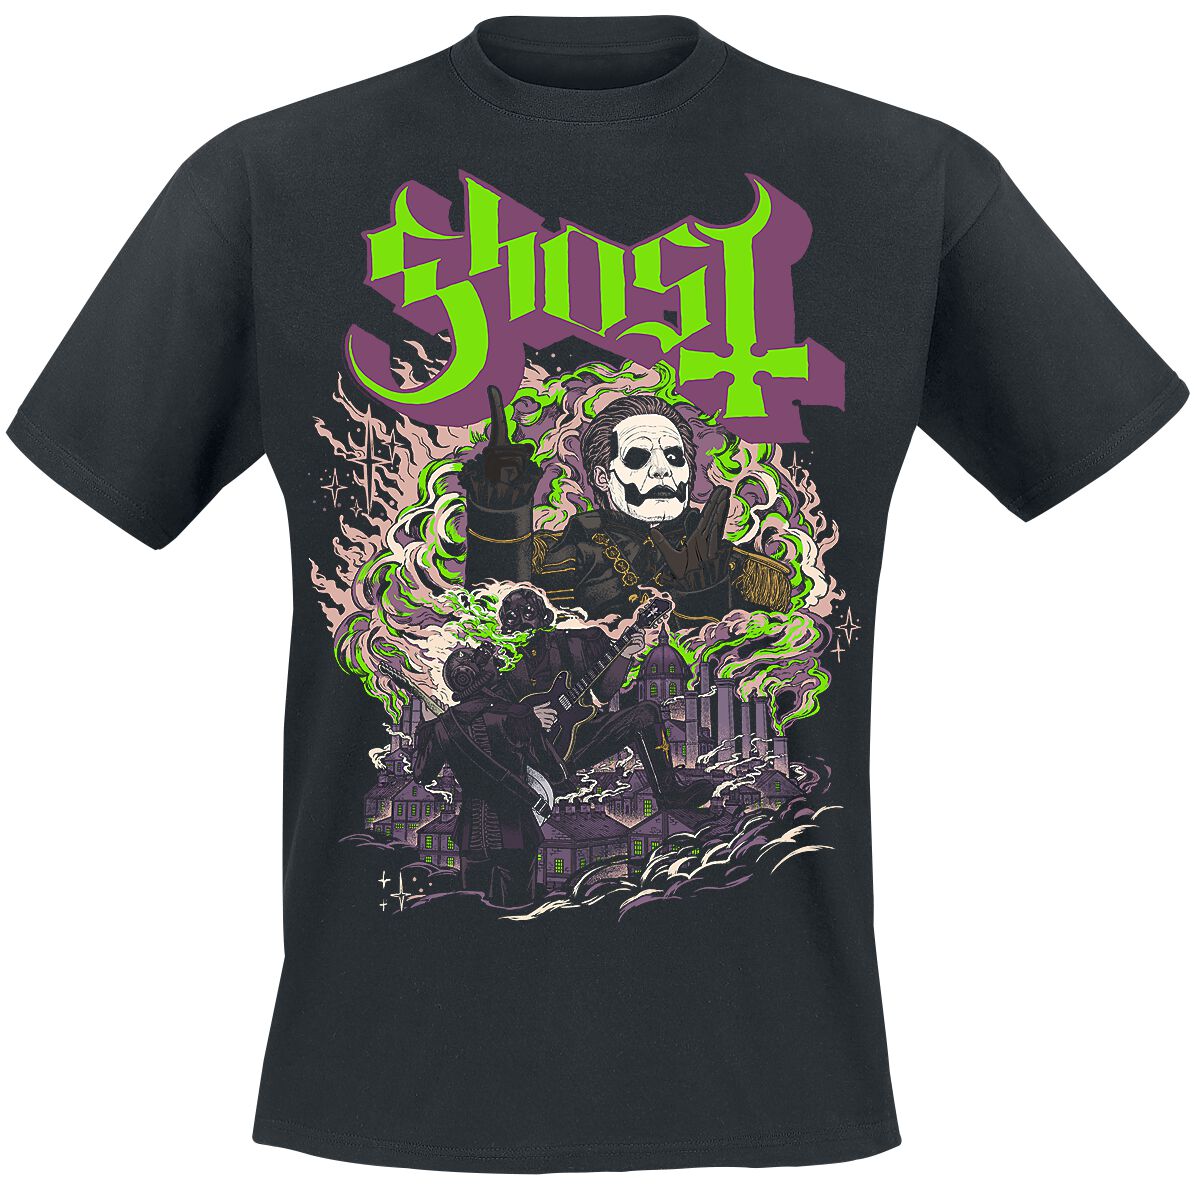 Ghost FOG - YK T-Shirt schwarz in M